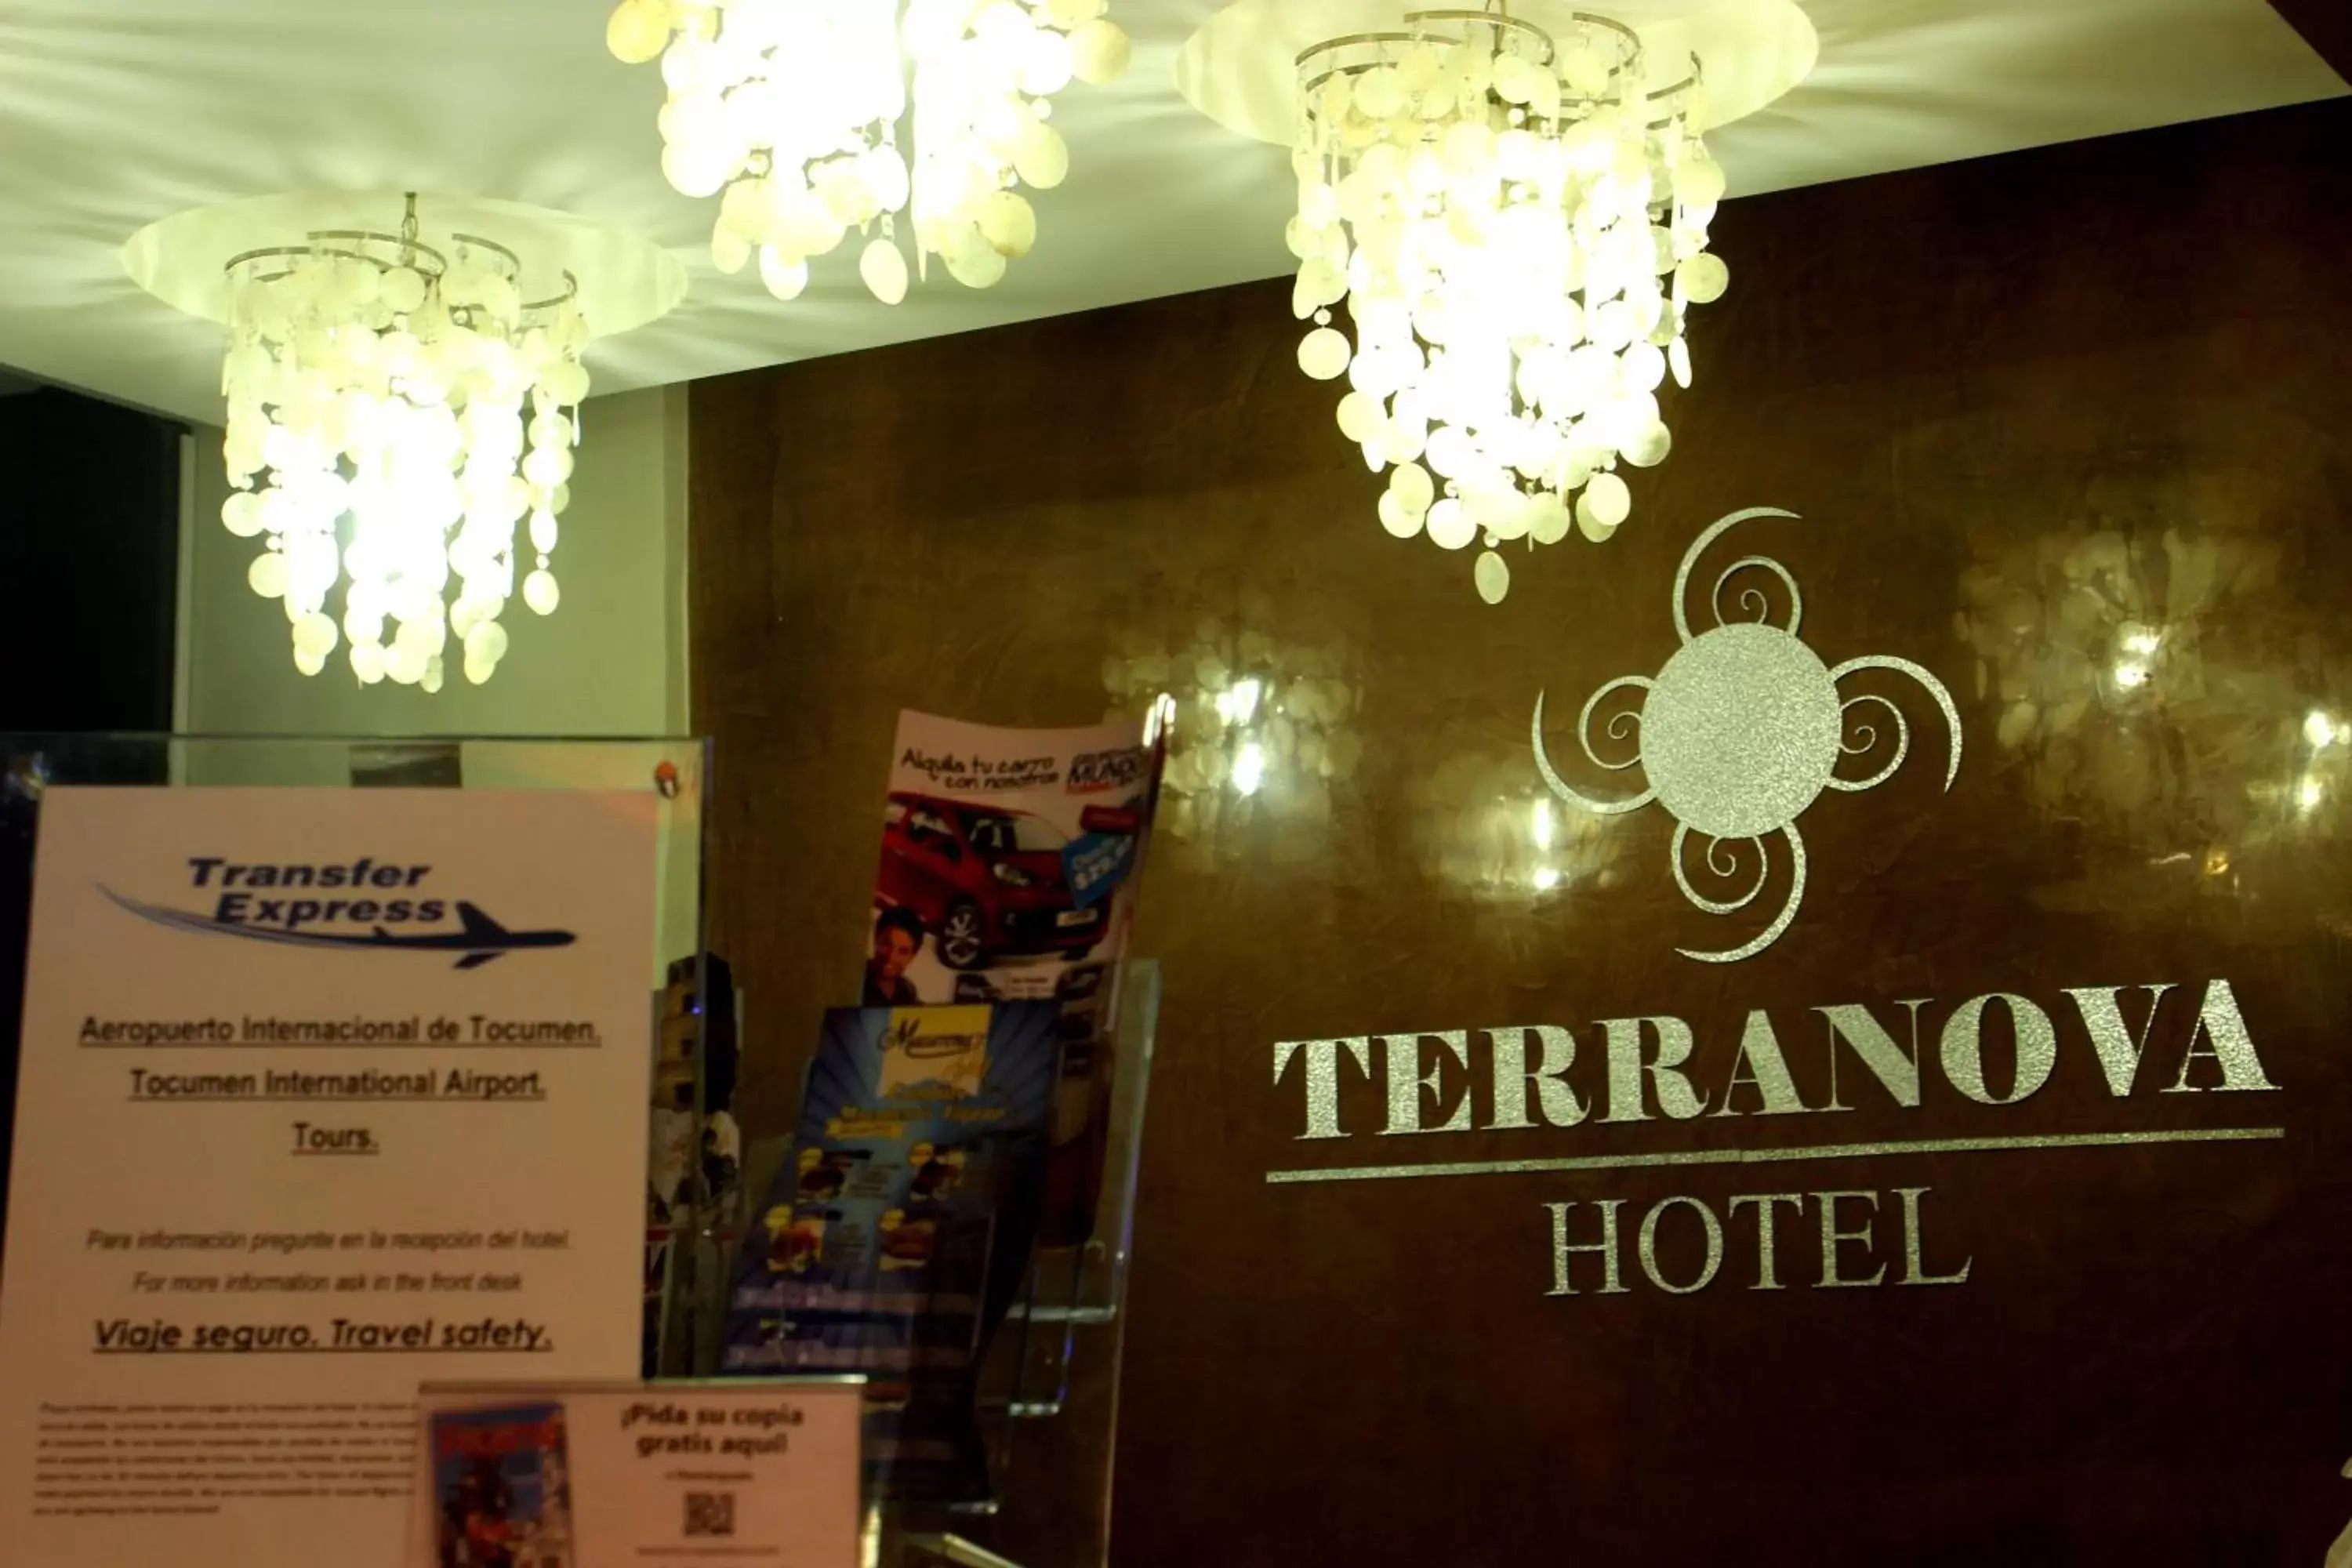 Lobby or reception in Hotel Terranova